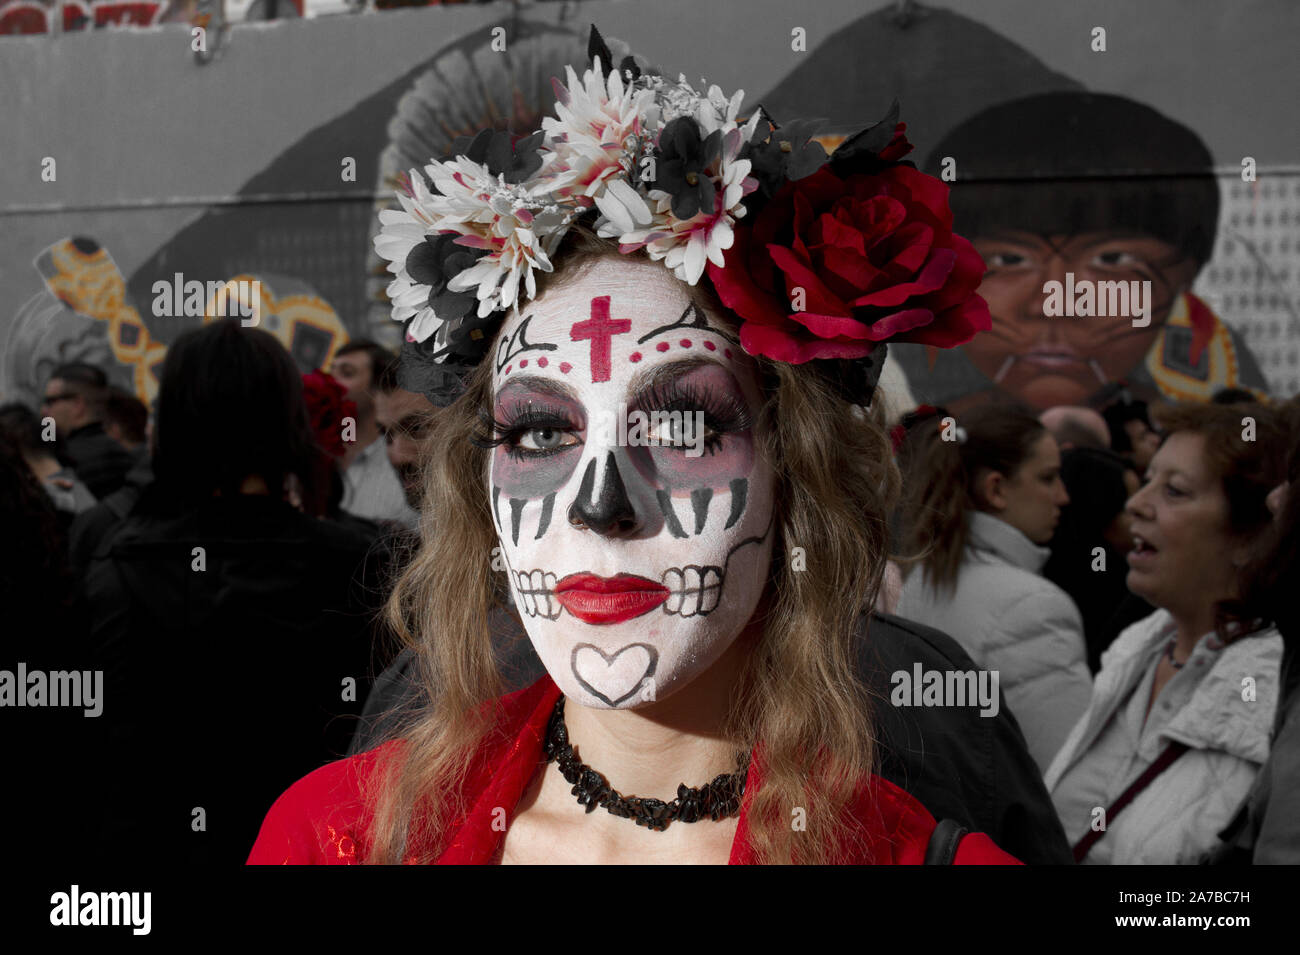 Madrid, España. 1 nov, 2017. Una mujer joven vestida como una catrina para  el concurso de catrinas durante el día de los muertos fiesta.Halloween se  celebra en octubre 31 y el "Día